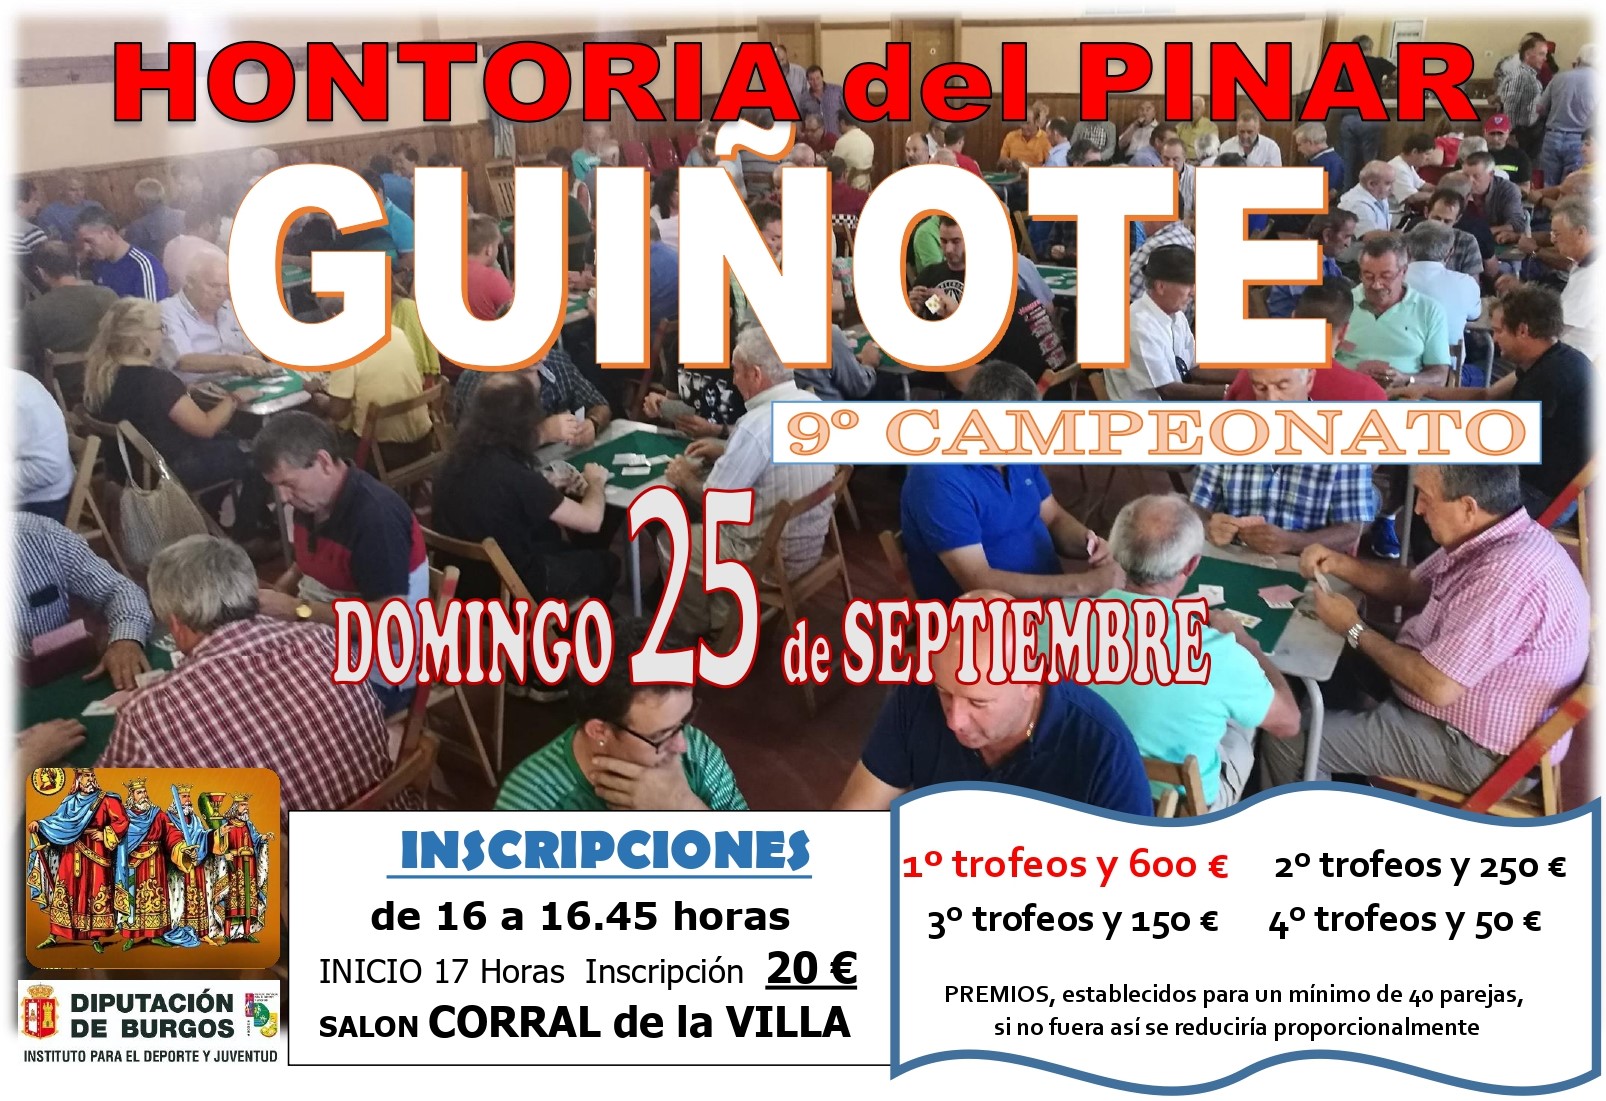 Novena edición del Campeonato de Guiñote de Hontoria del Pinar